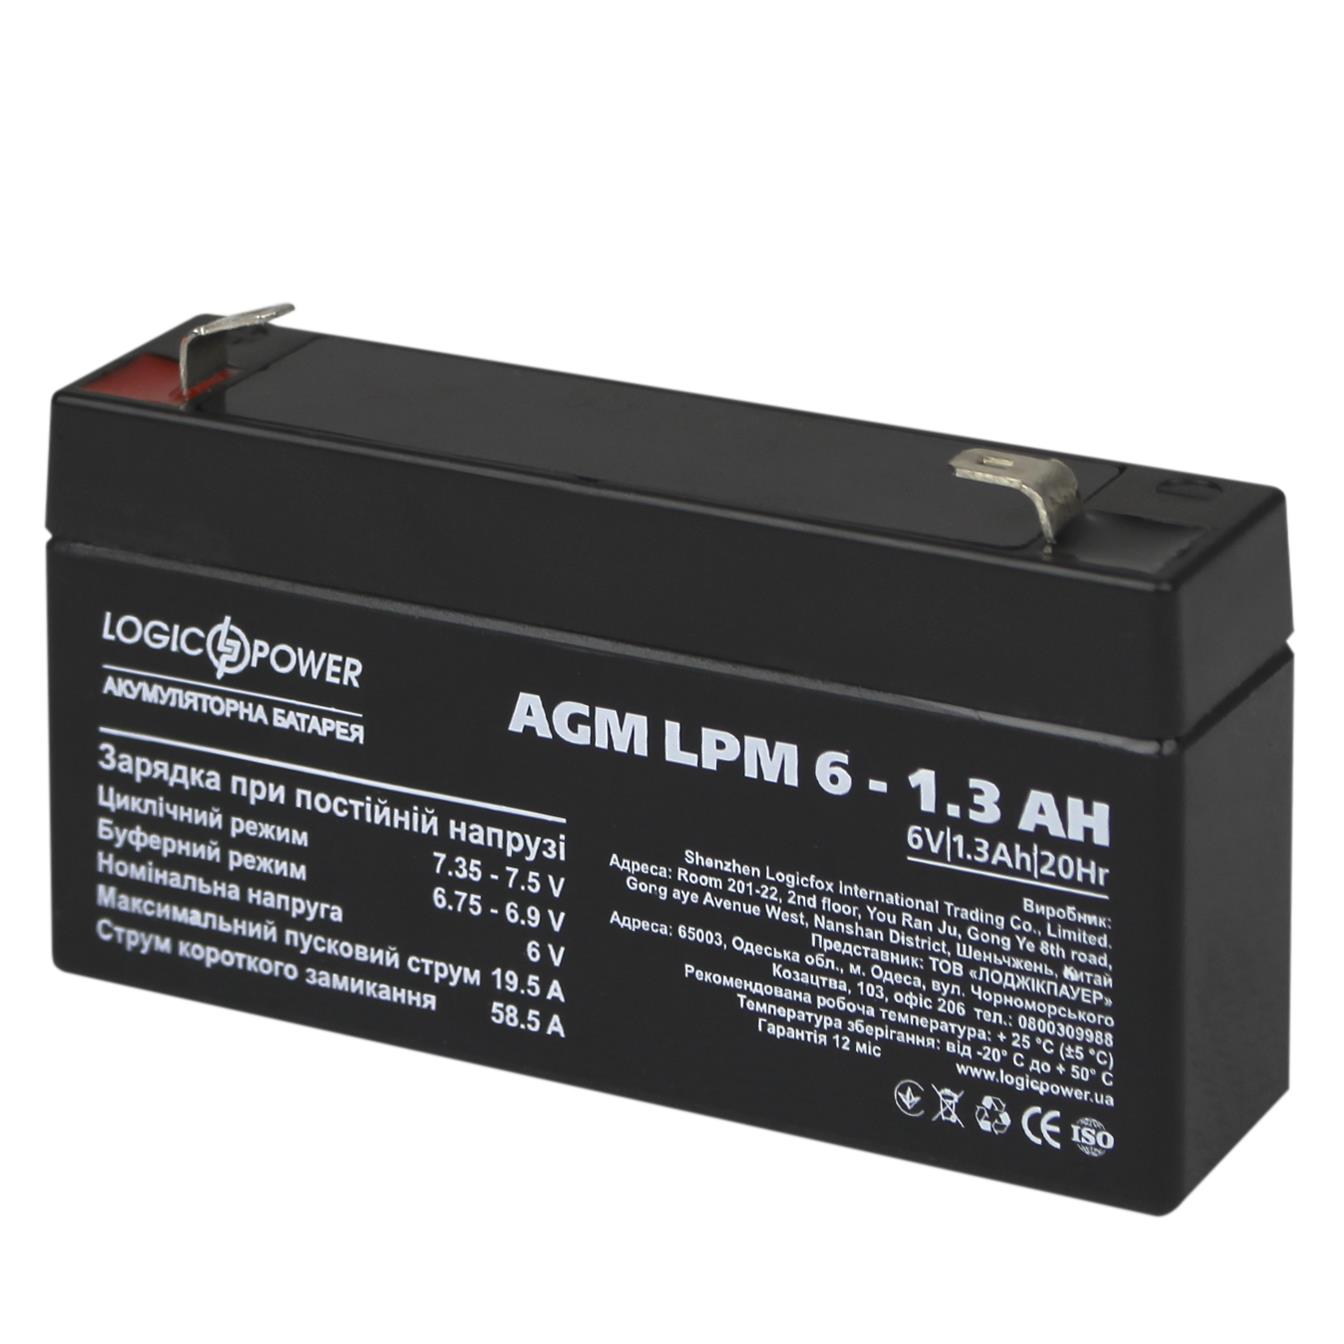 Характеристики акумулятор свинцево-кислотний LogicPower AGM LPM 6V - 1.3 Ah (4157)